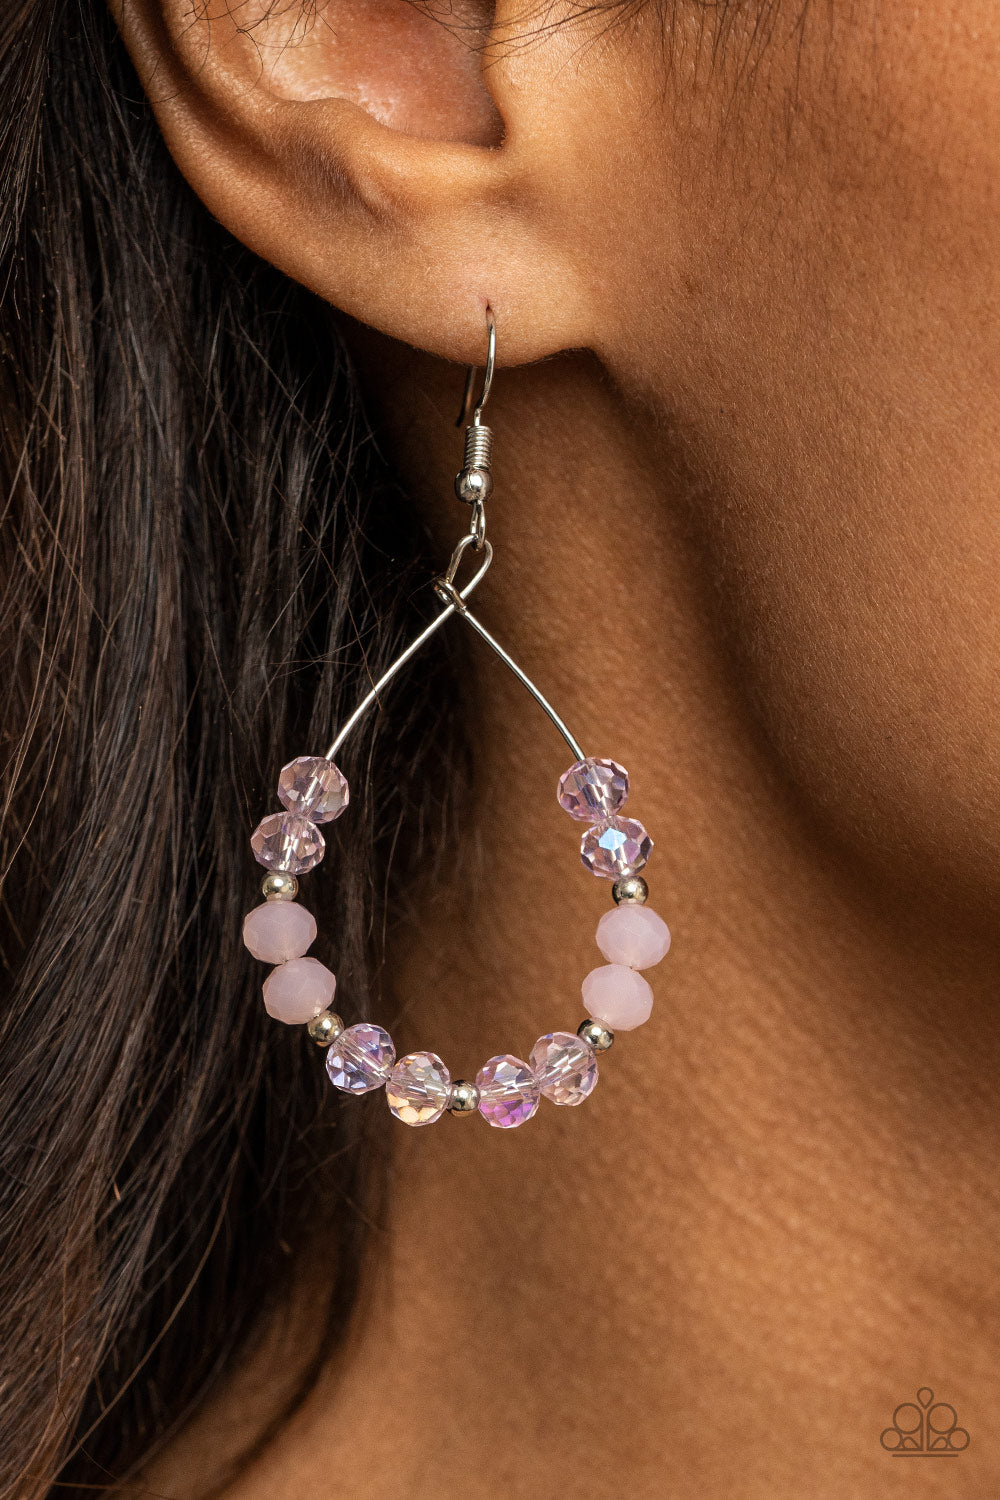 Wink Wink - Pink Earrings Paparazzi Accessories $5 Jewelry #P5RE-PKXX-222XX 